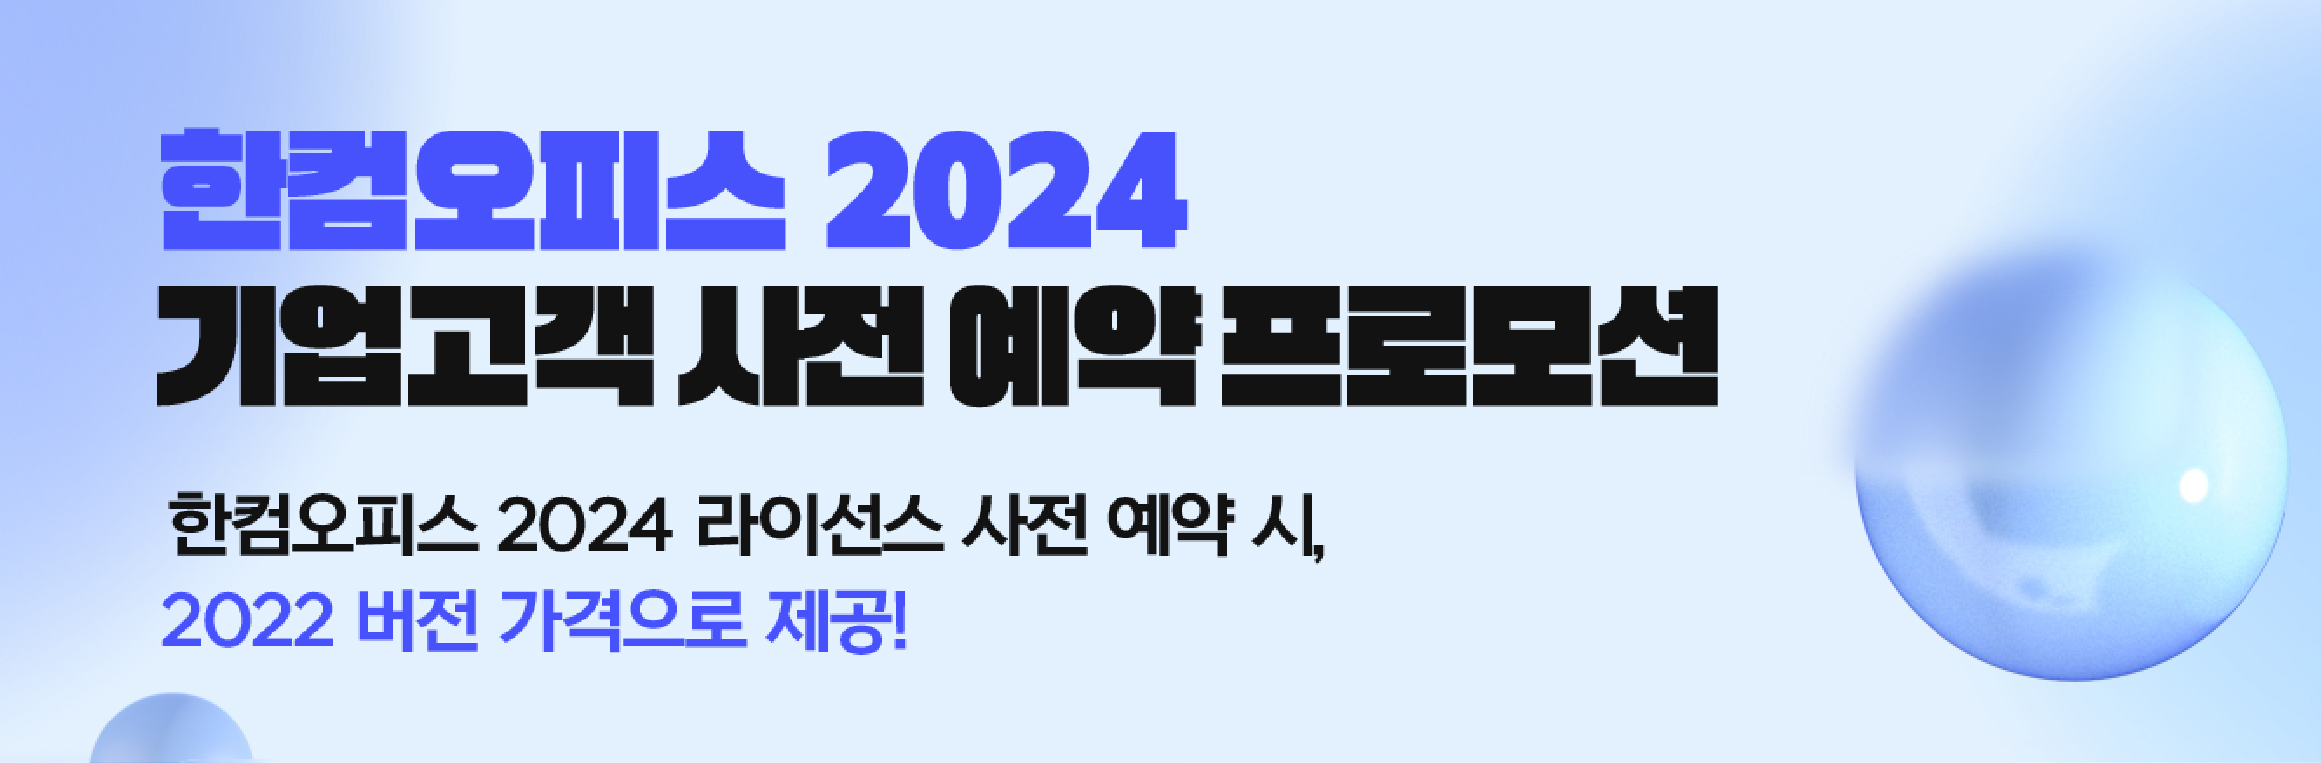 한컴오피스 2024 기업고객 사전 예약 프로모션